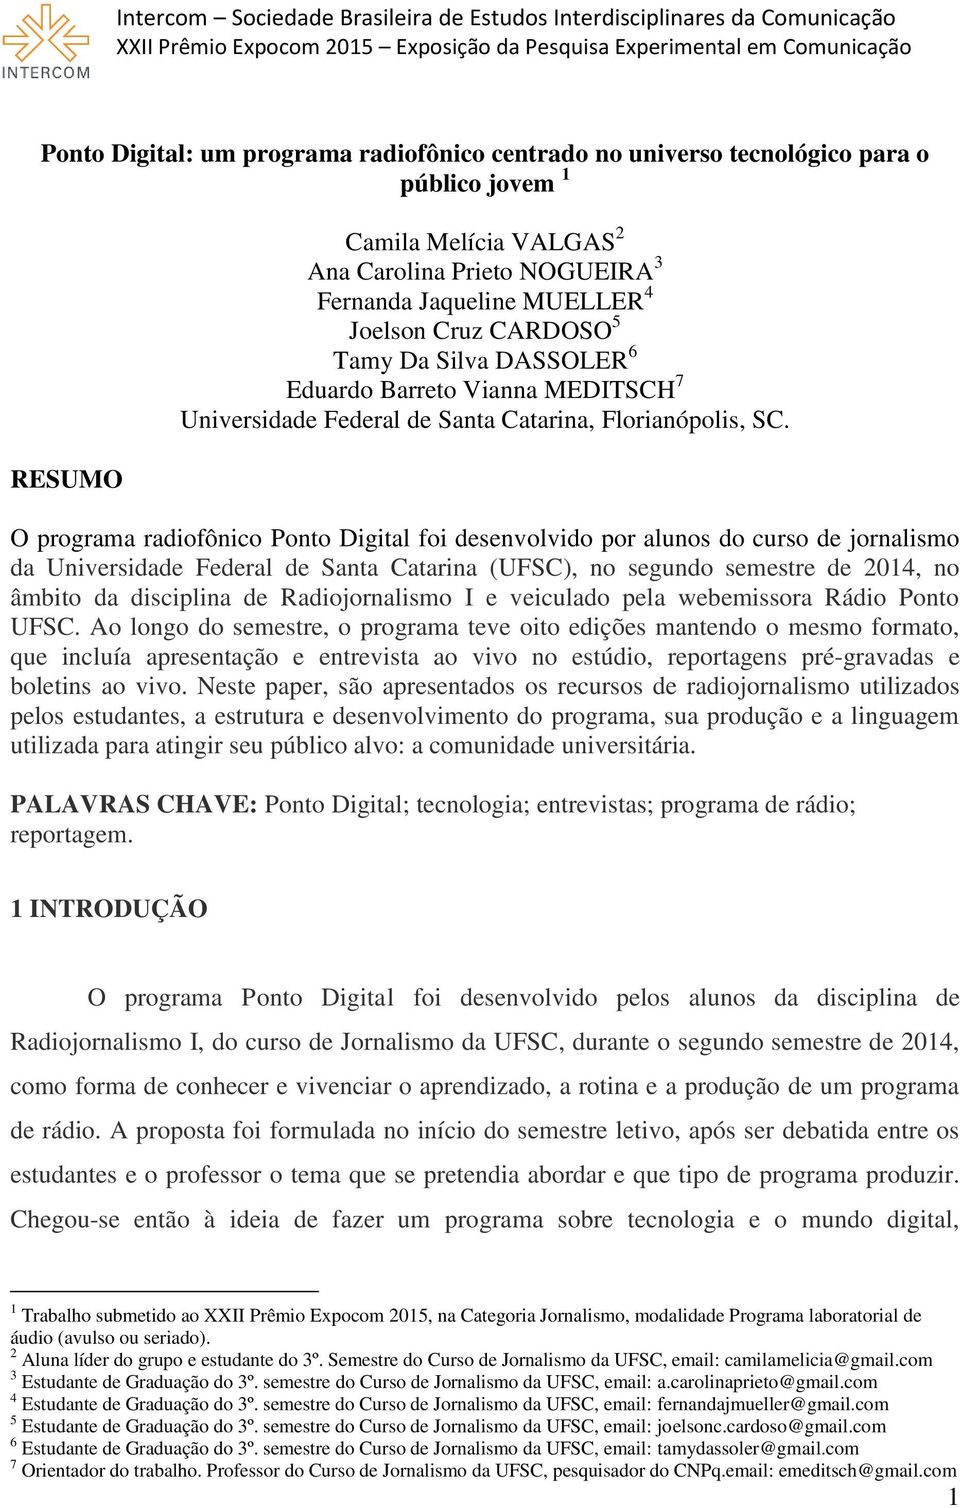 O programa radiofônico Ponto Digital foi desenvolvido por alunos do curso de jornalismo da Universidade Federal de Santa Catarina (UFSC), no segundo semestre de 2014, no âmbito da disciplina de